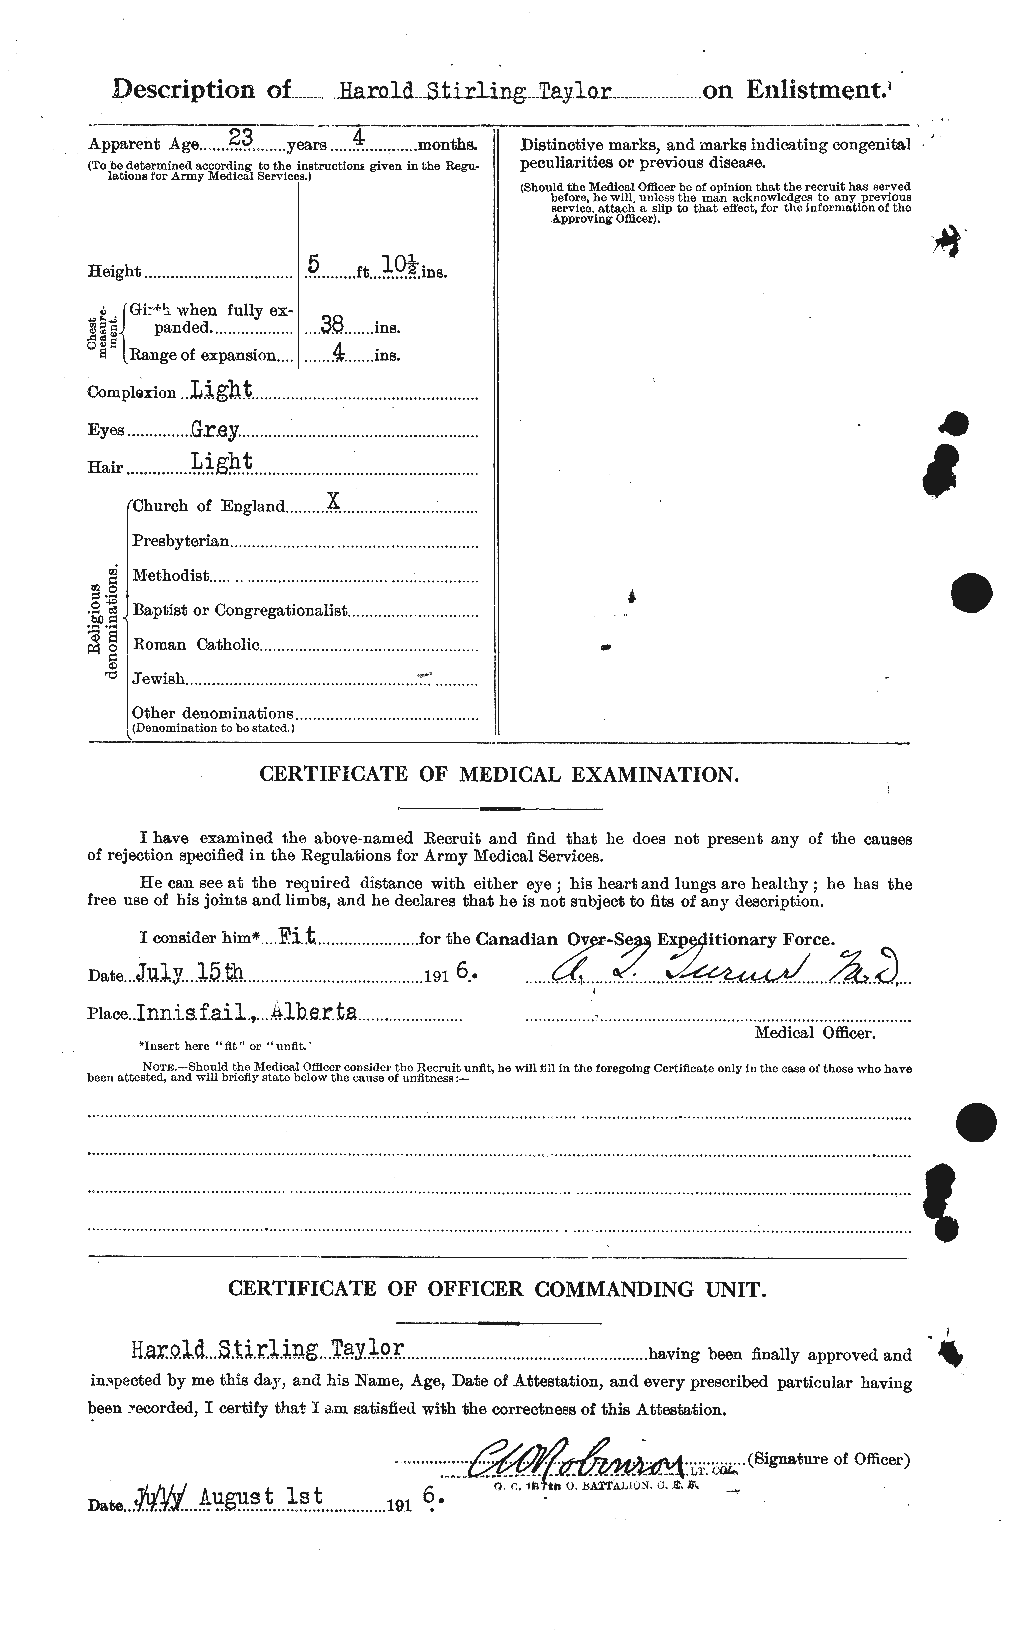 Dossiers du Personnel de la Première Guerre mondiale - CEC 626434b